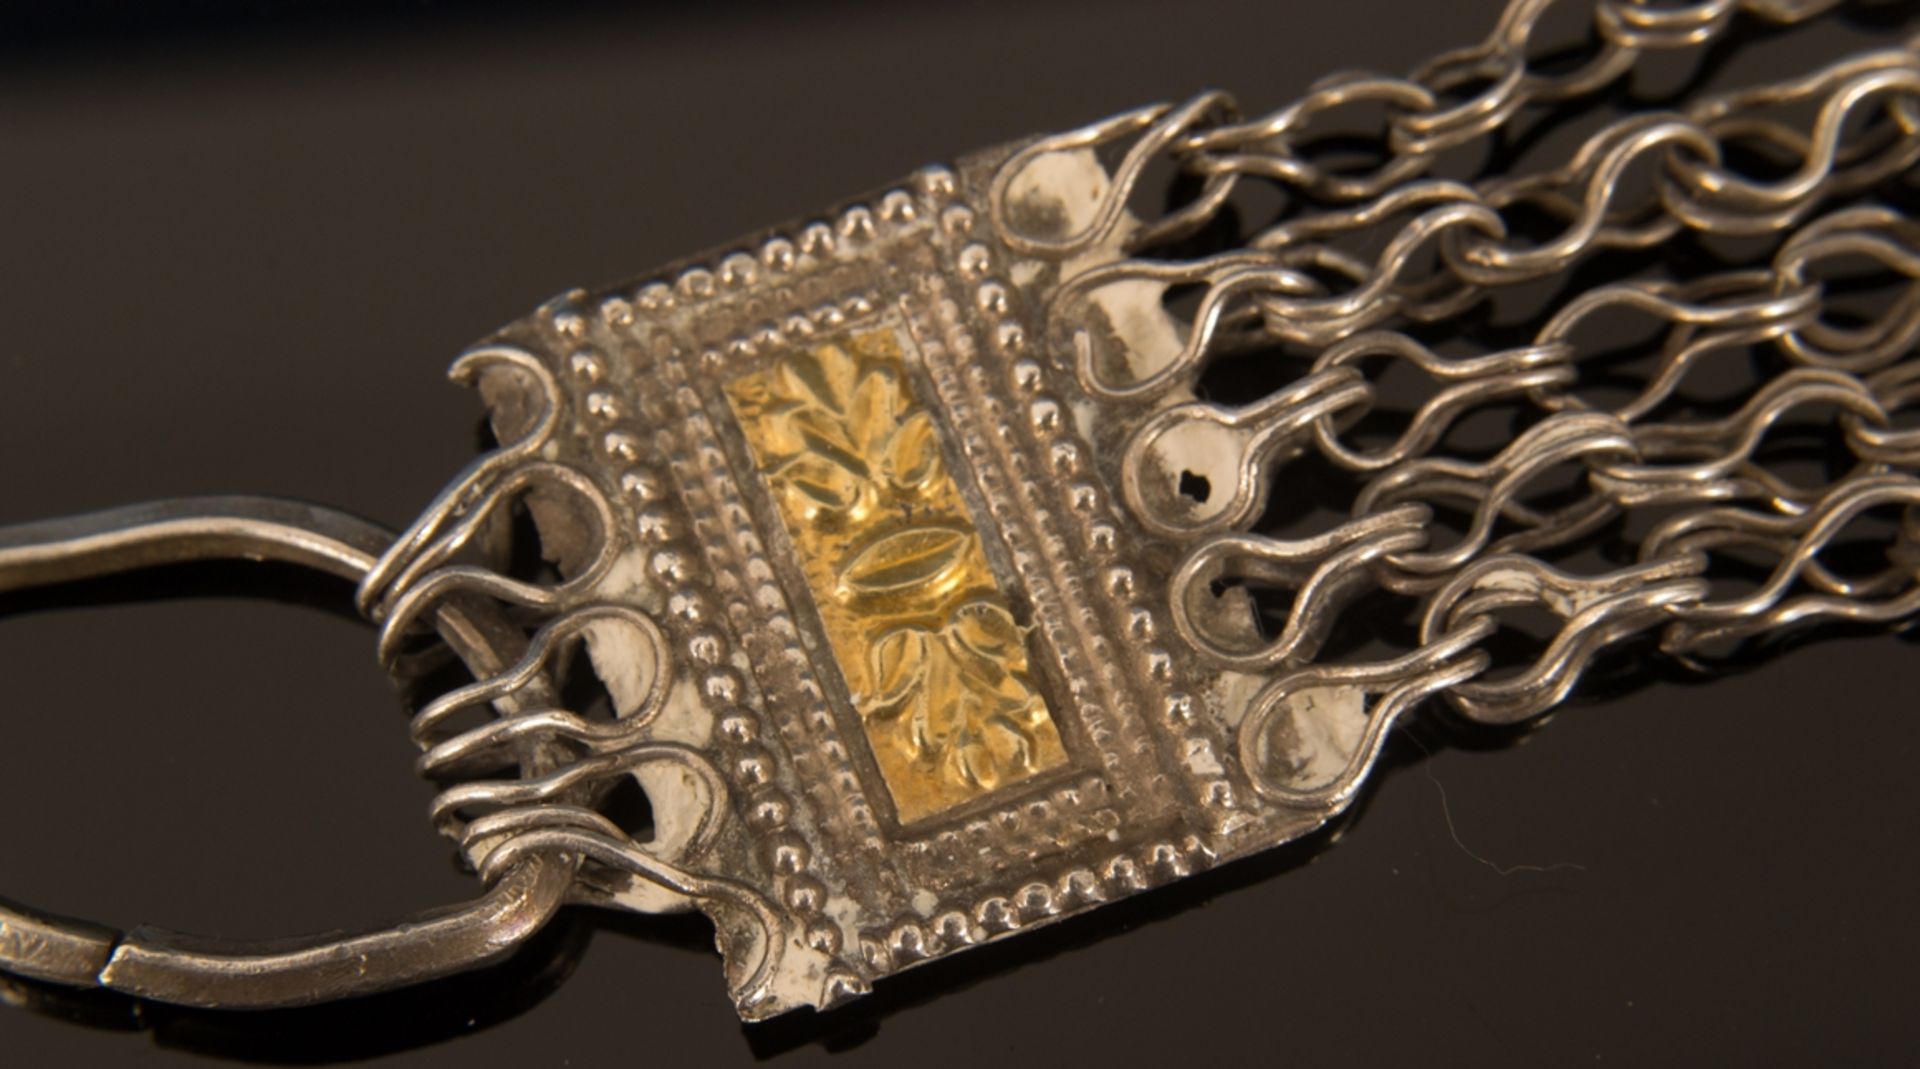 Gliederarmband aus dem Oman. Silber, teilweise vergoldet, ungestempelt. Länge ca. 35 cm. - Bild 5 aus 11